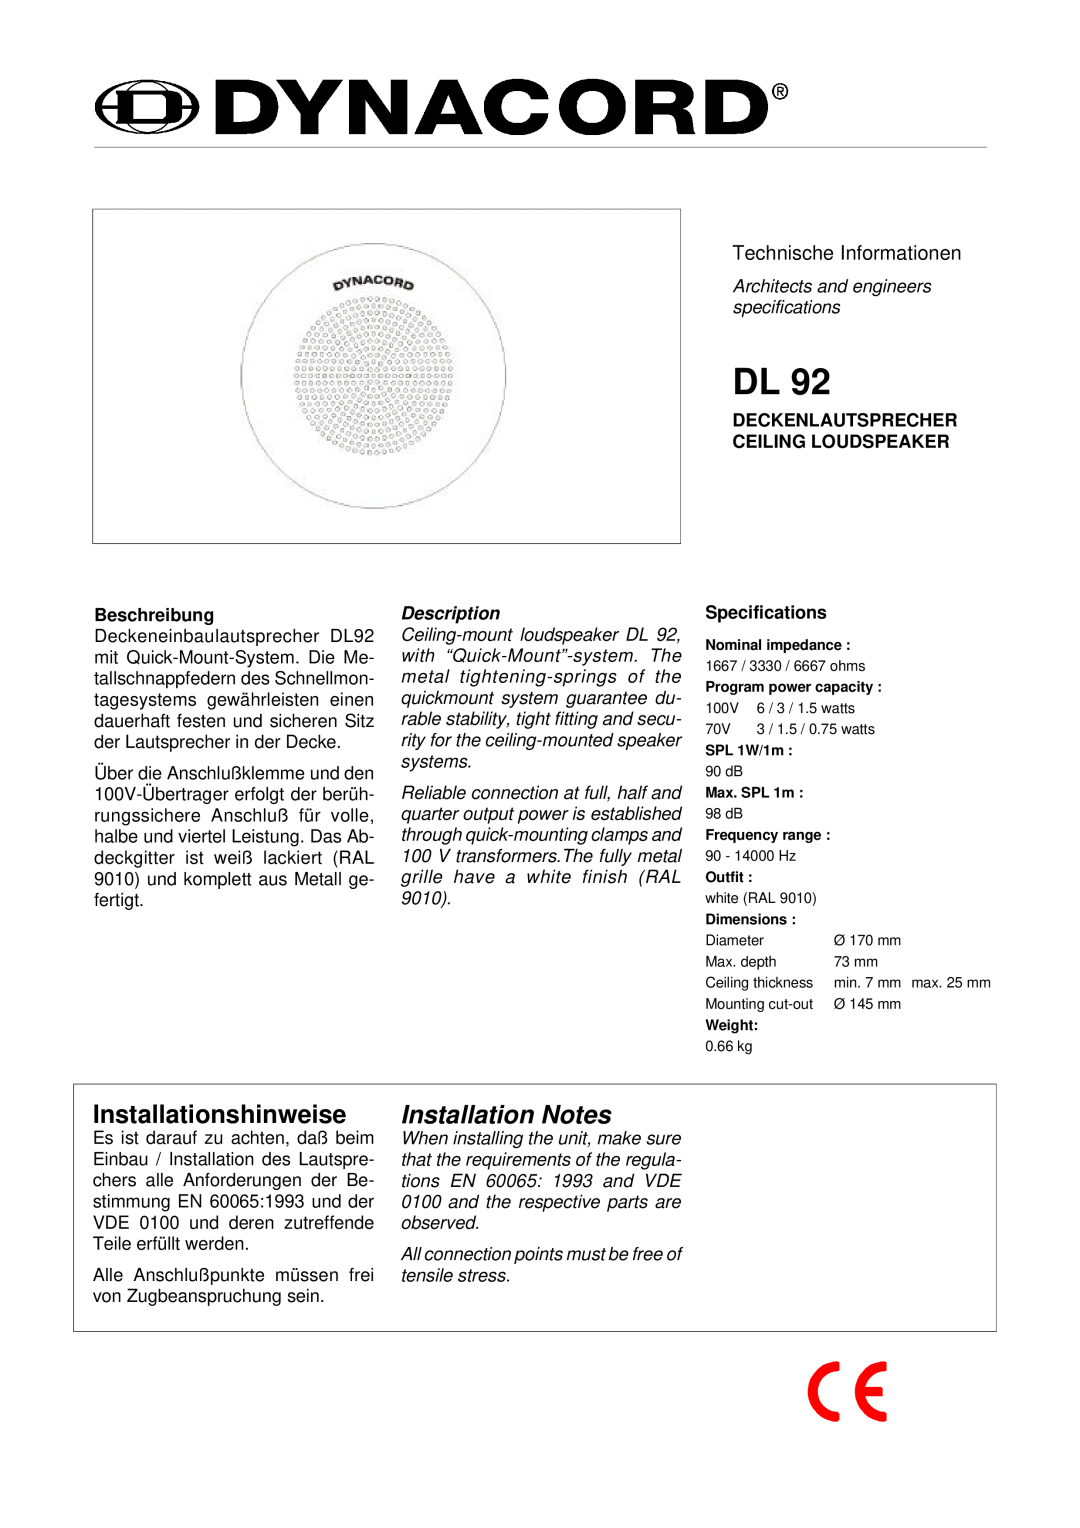 Dynacord DL 92 specifications Installationshinweise, Installation Notes, Technische Informationen, Description 